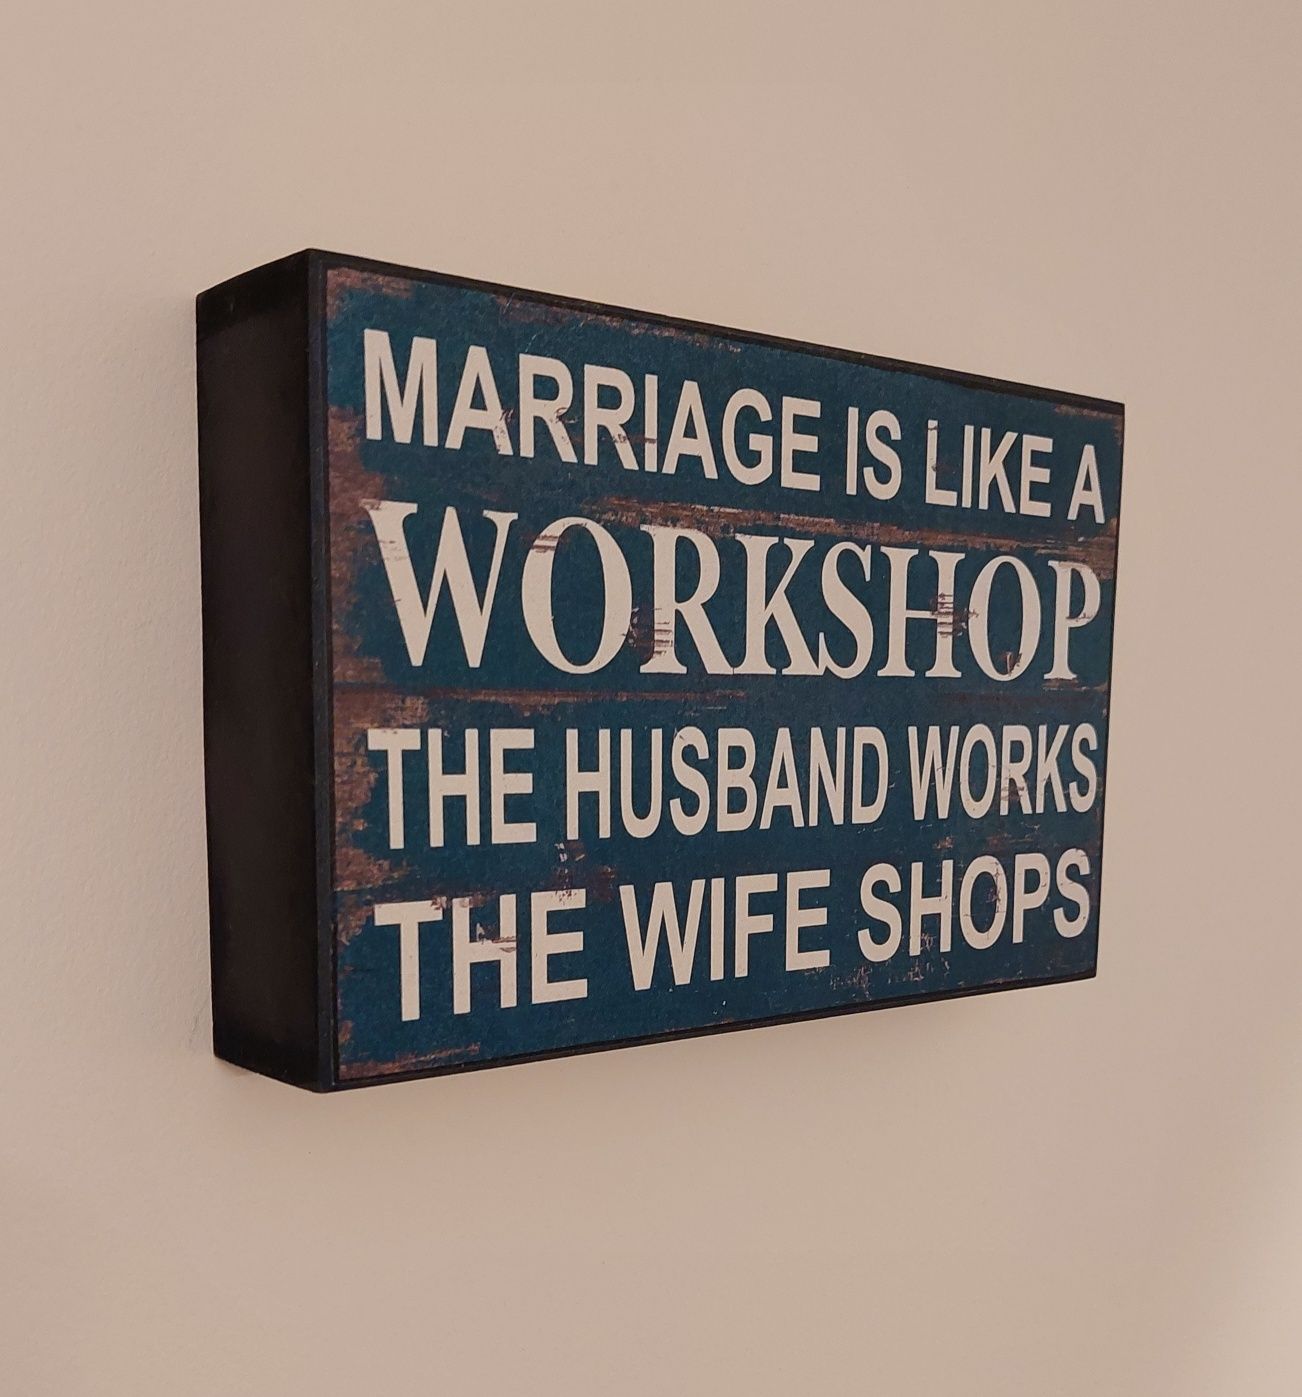 Obrazek z napisem - dekoracja ściany - marriage is like a workshop